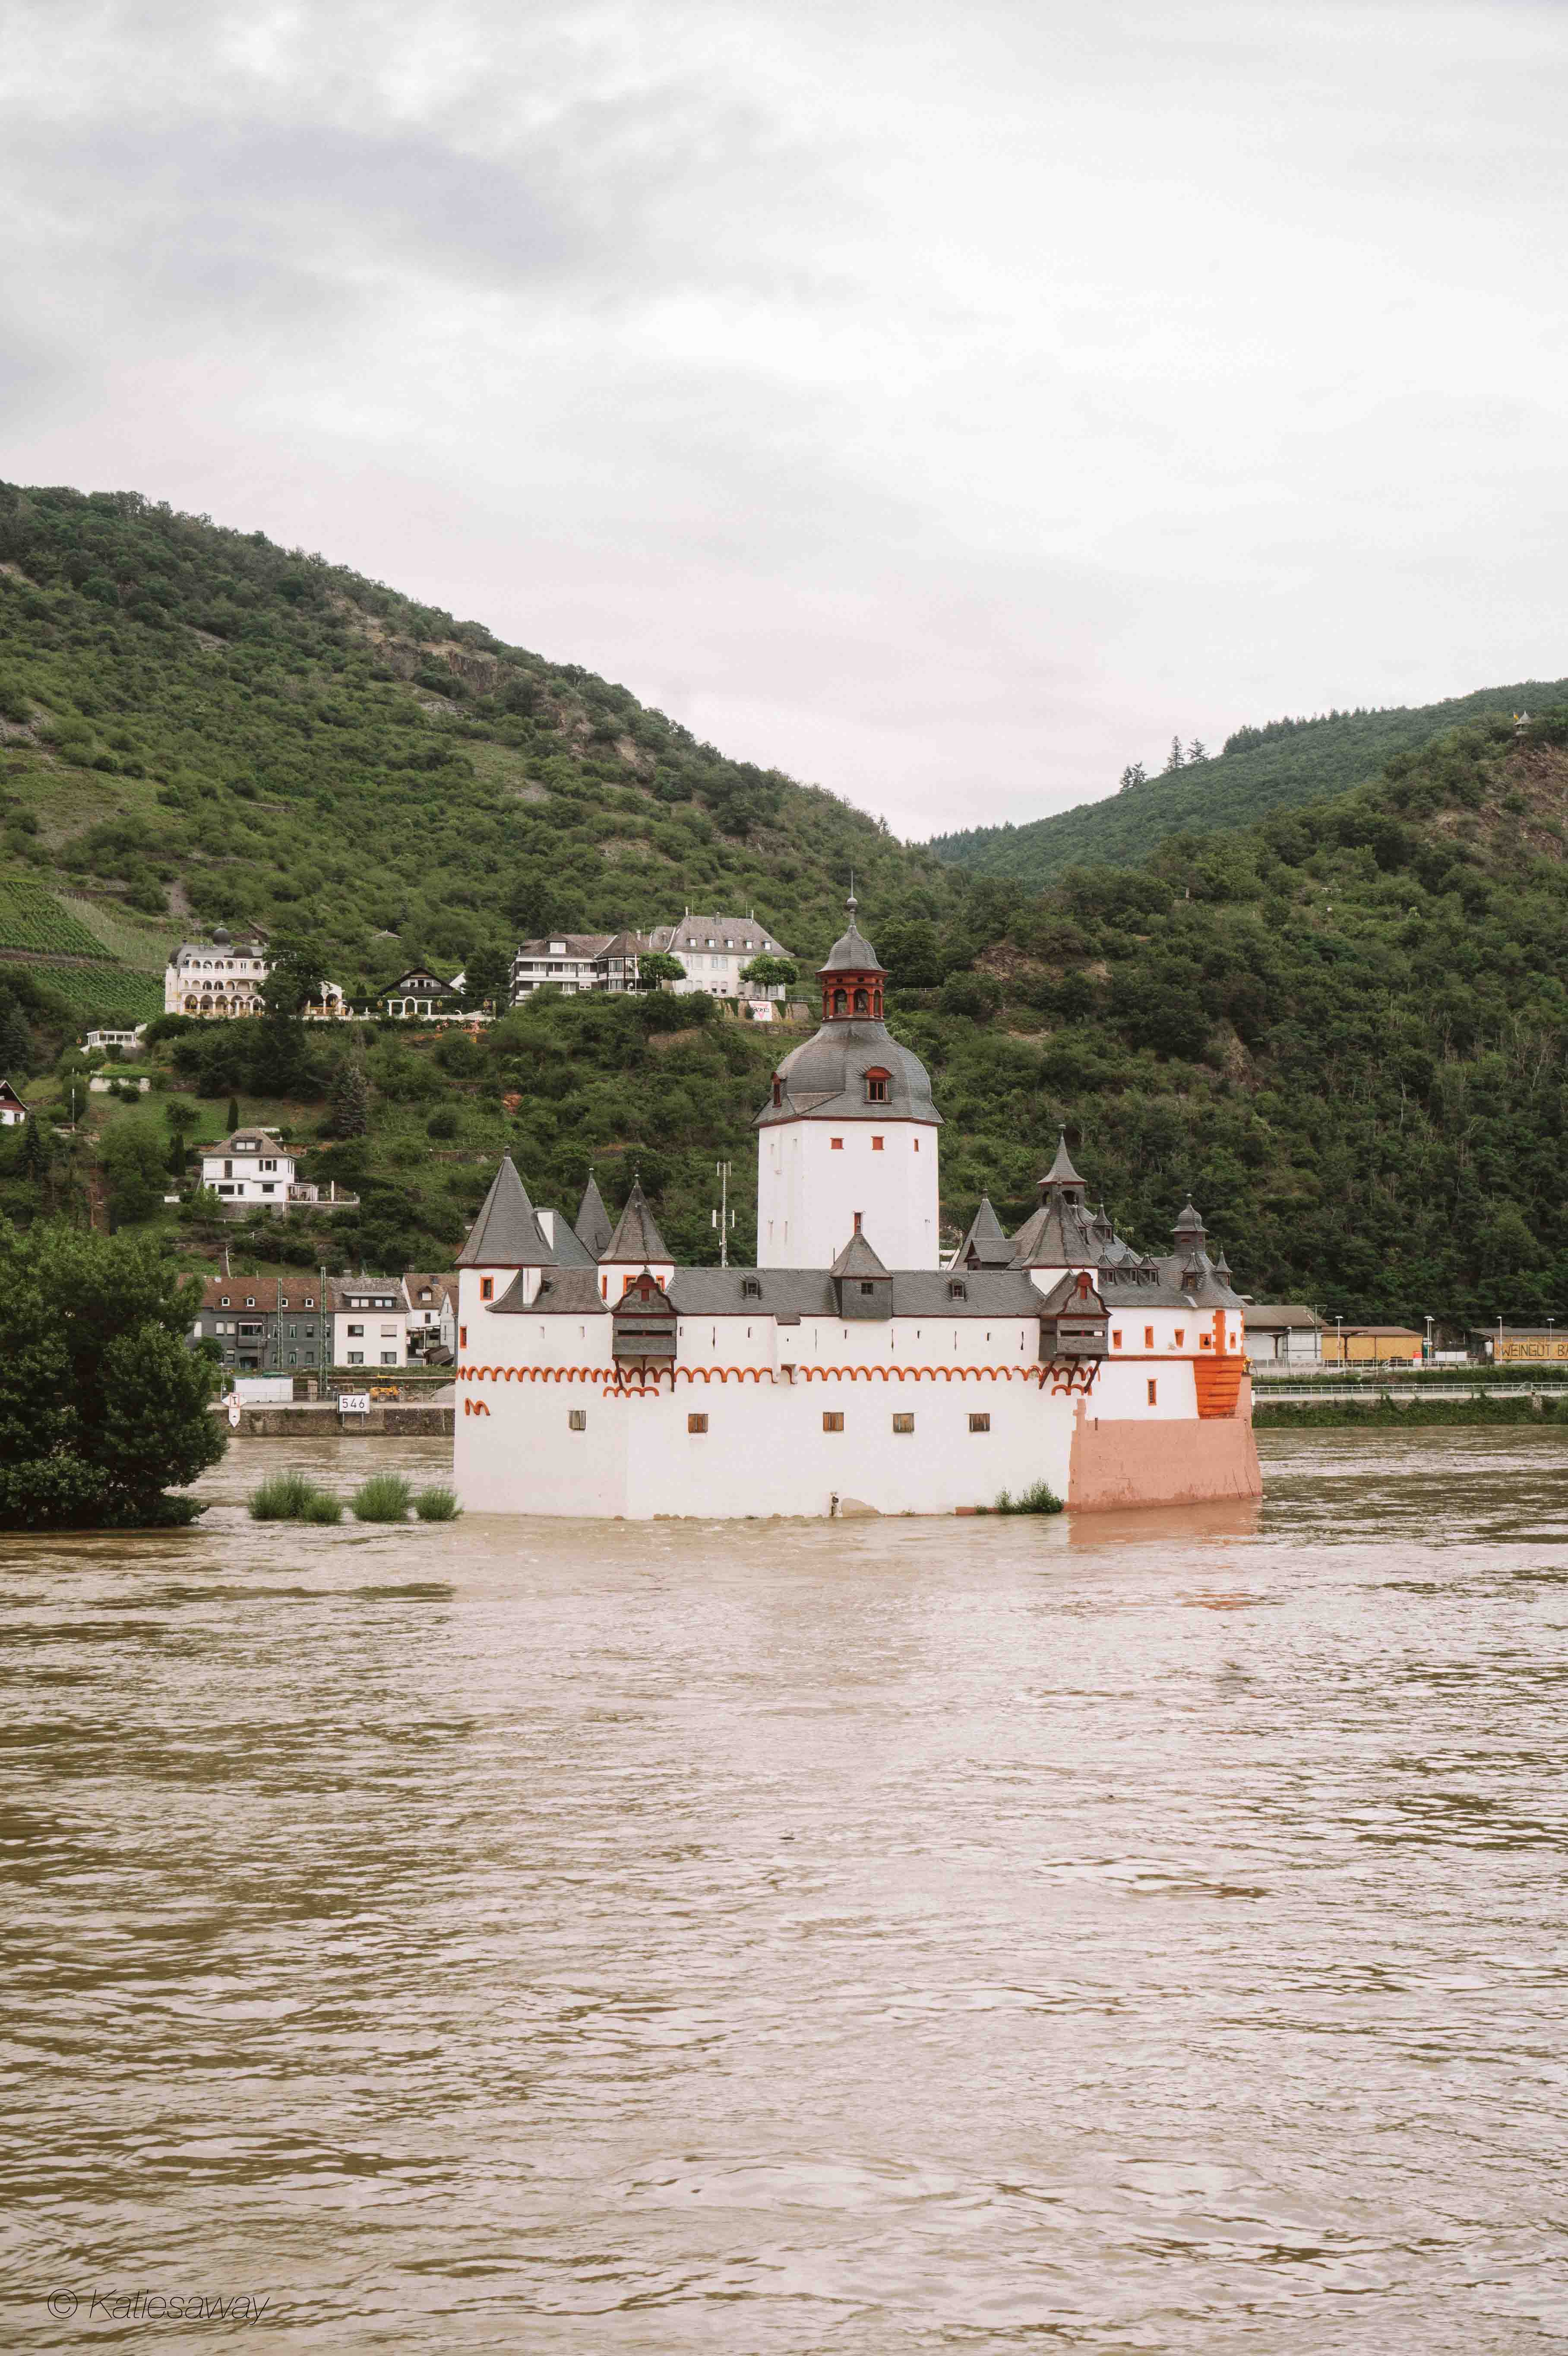 Pfalzgrafenstein Castle on the rhine river